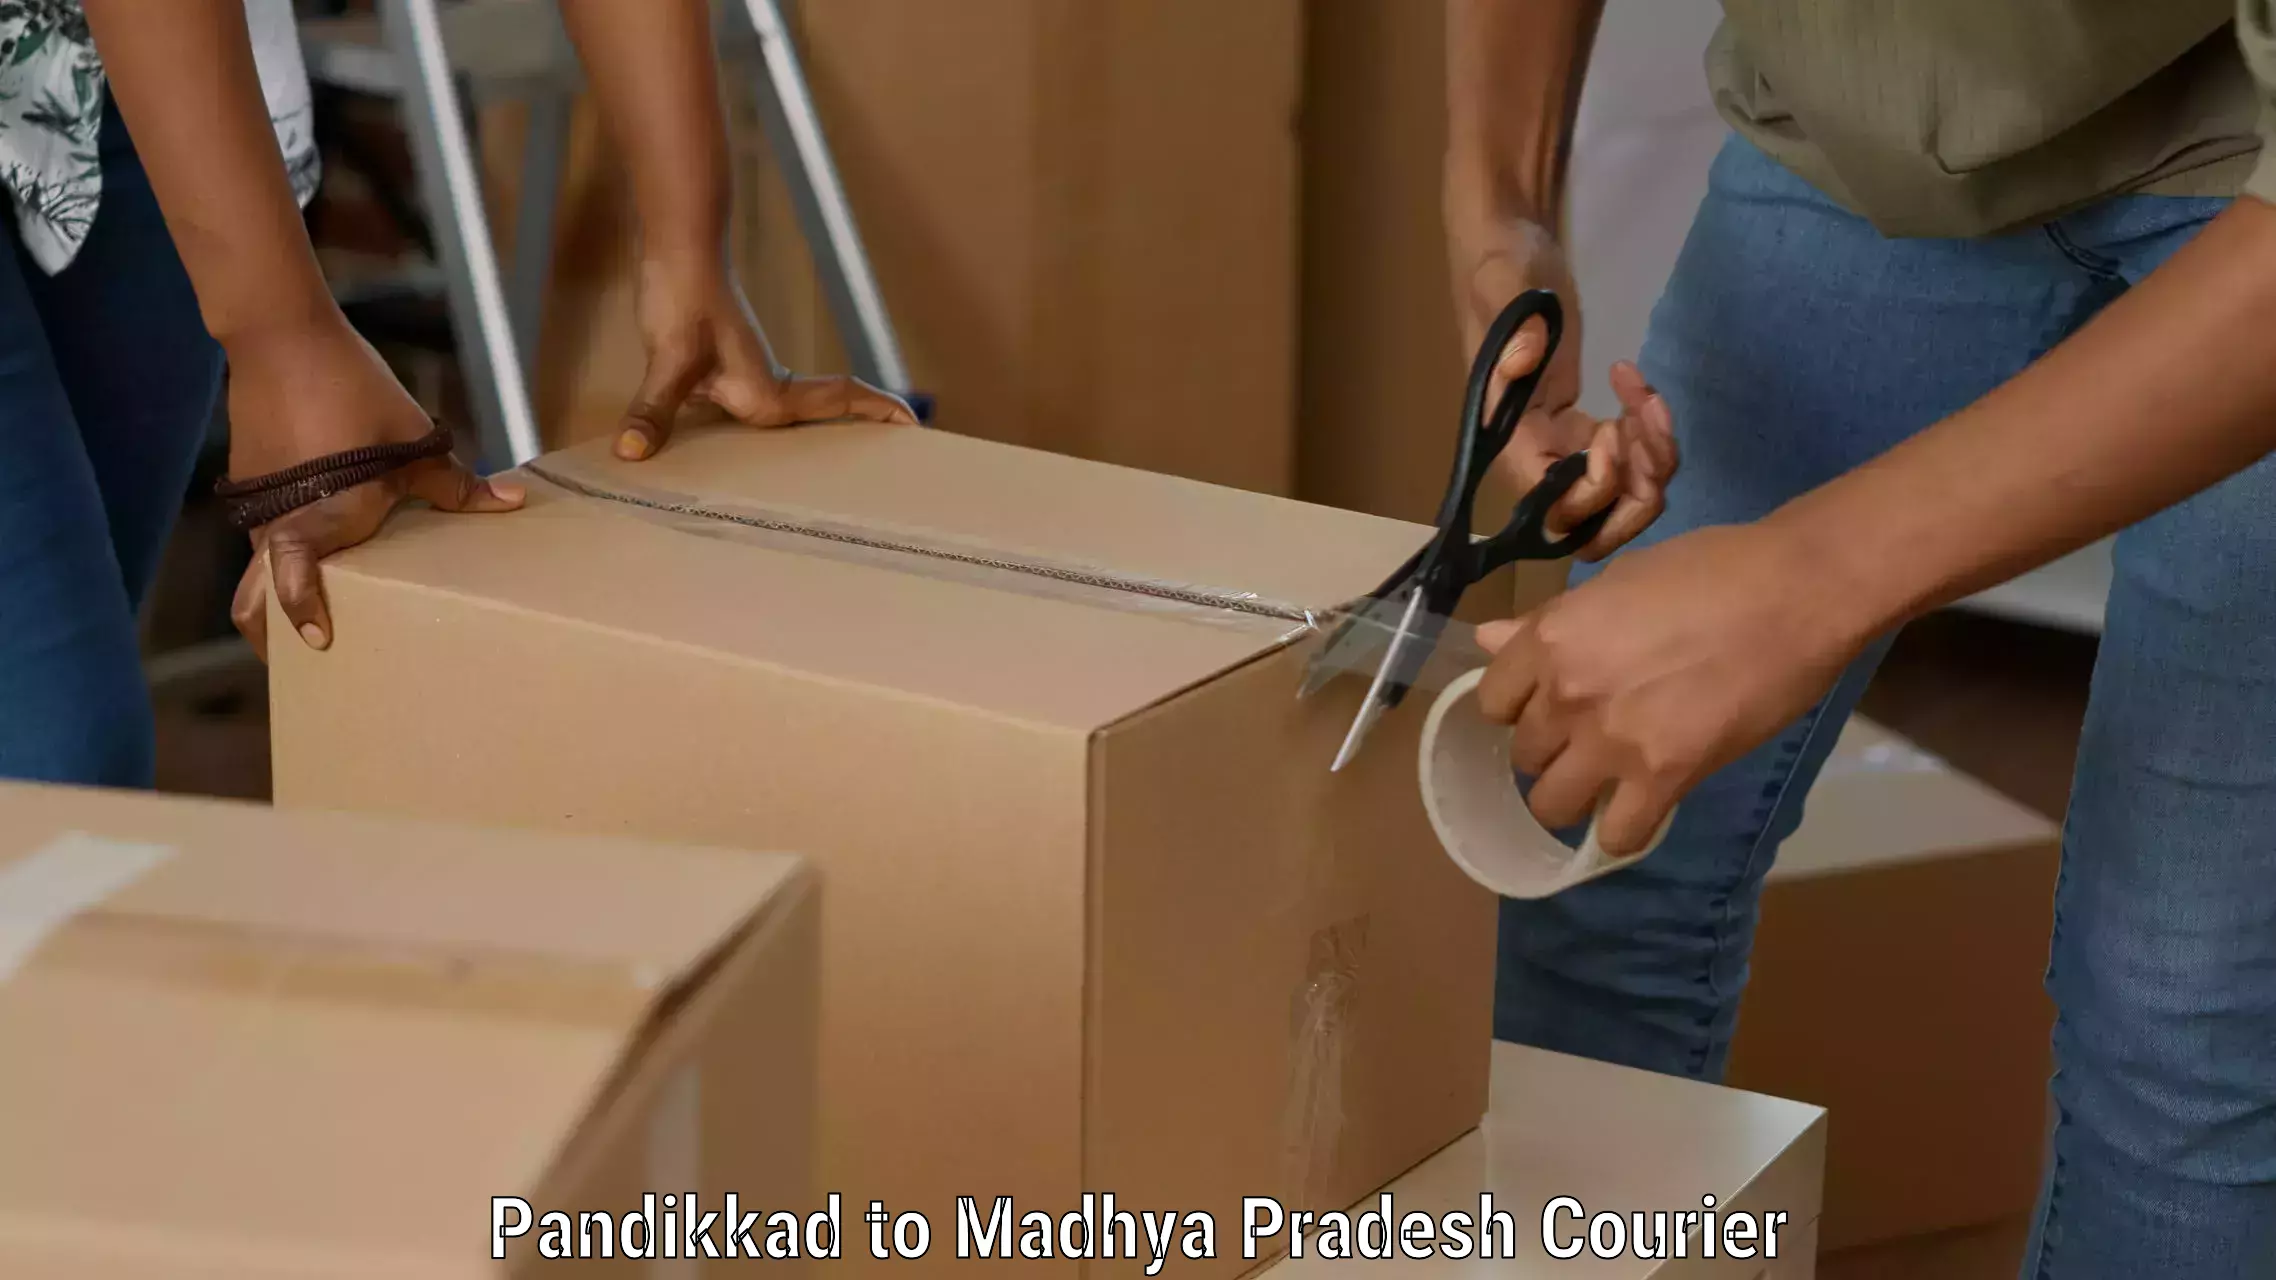 Speedy delivery service Pandikkad to Dewas